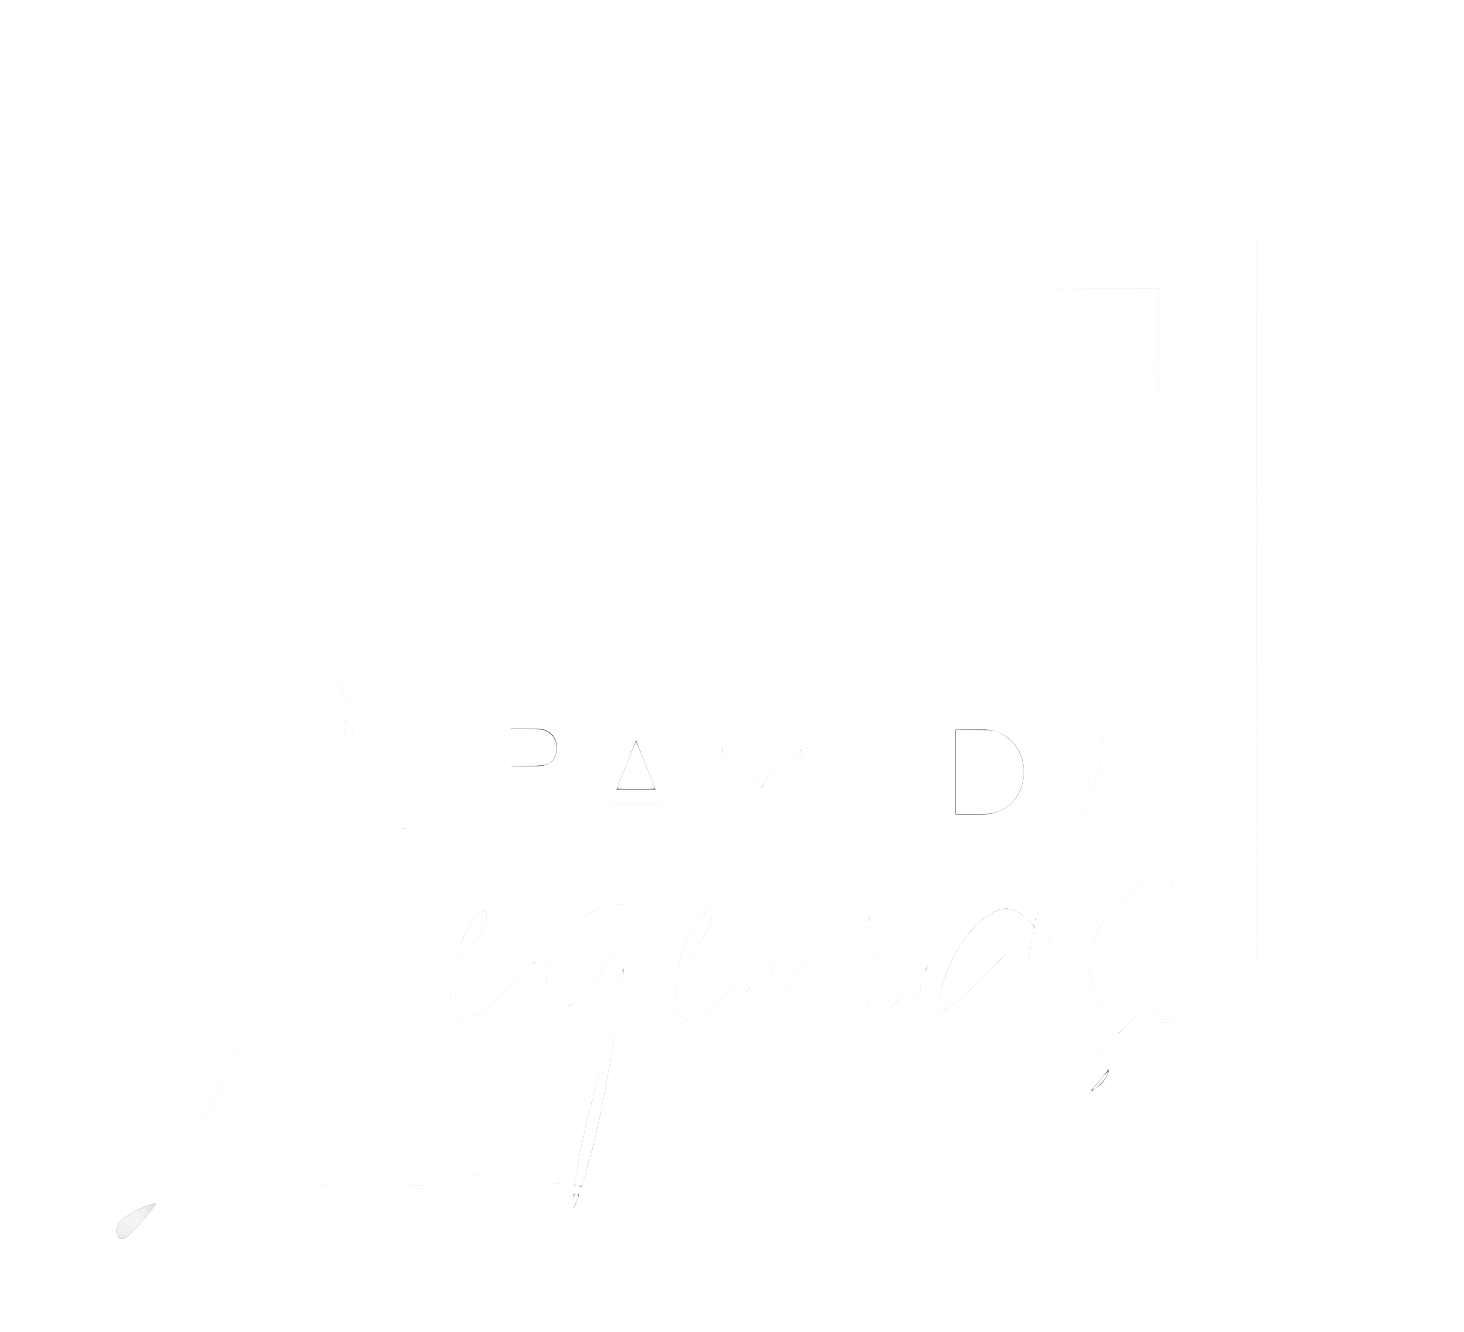 Framed Legends